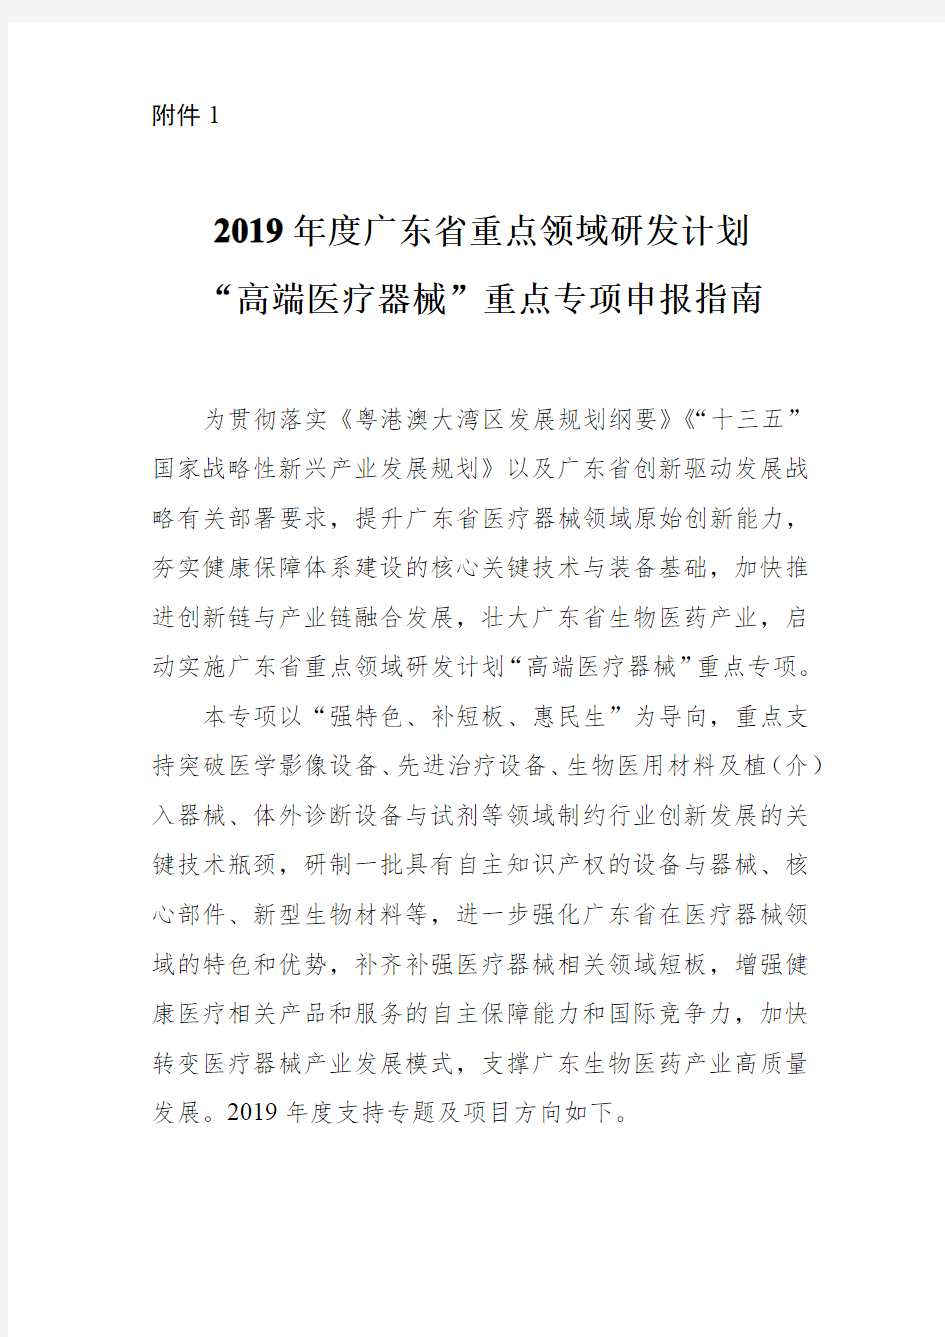 2019年度广东省重点领域研发计划高端医疗器械重点专项